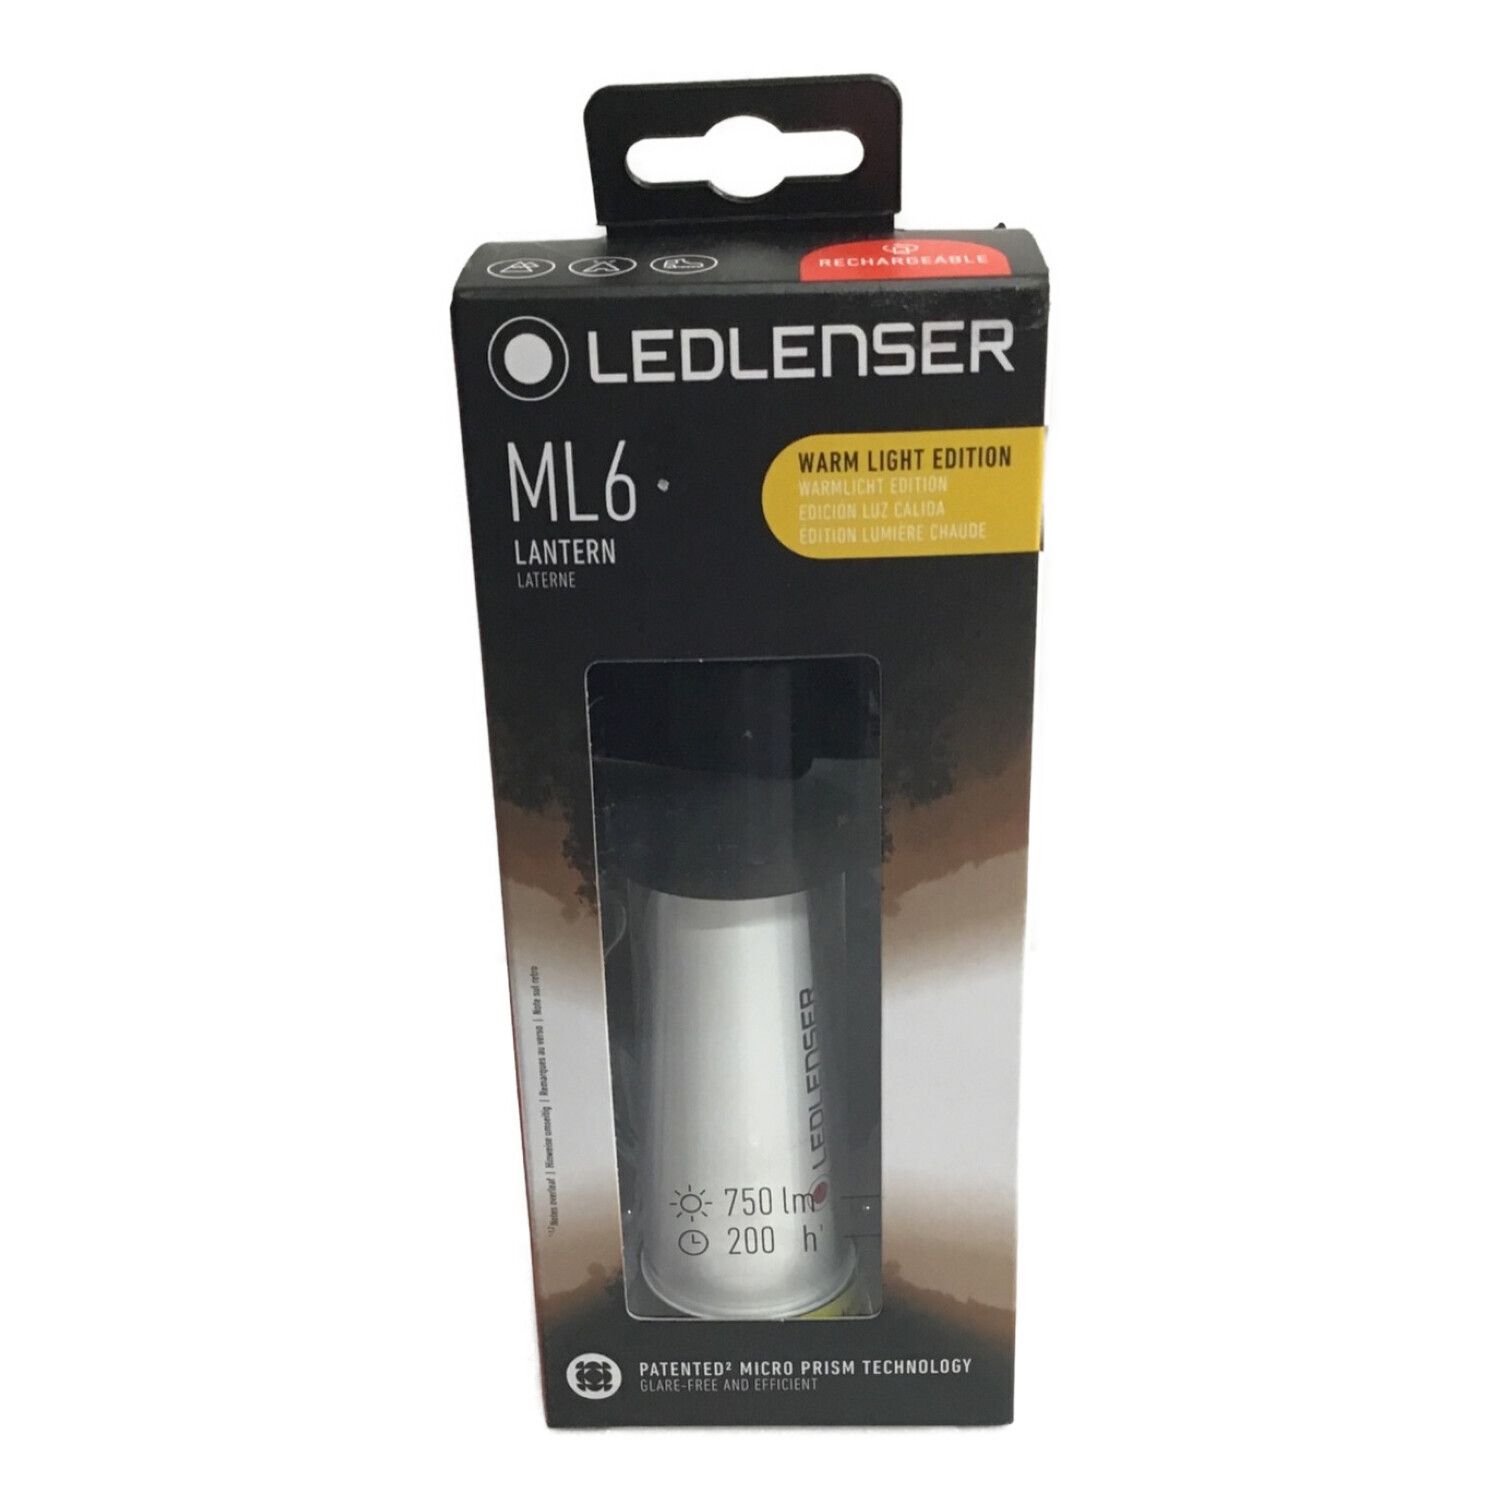 LED LENSER (レッドレンザー) LEDランタン 暖色ウォームライト